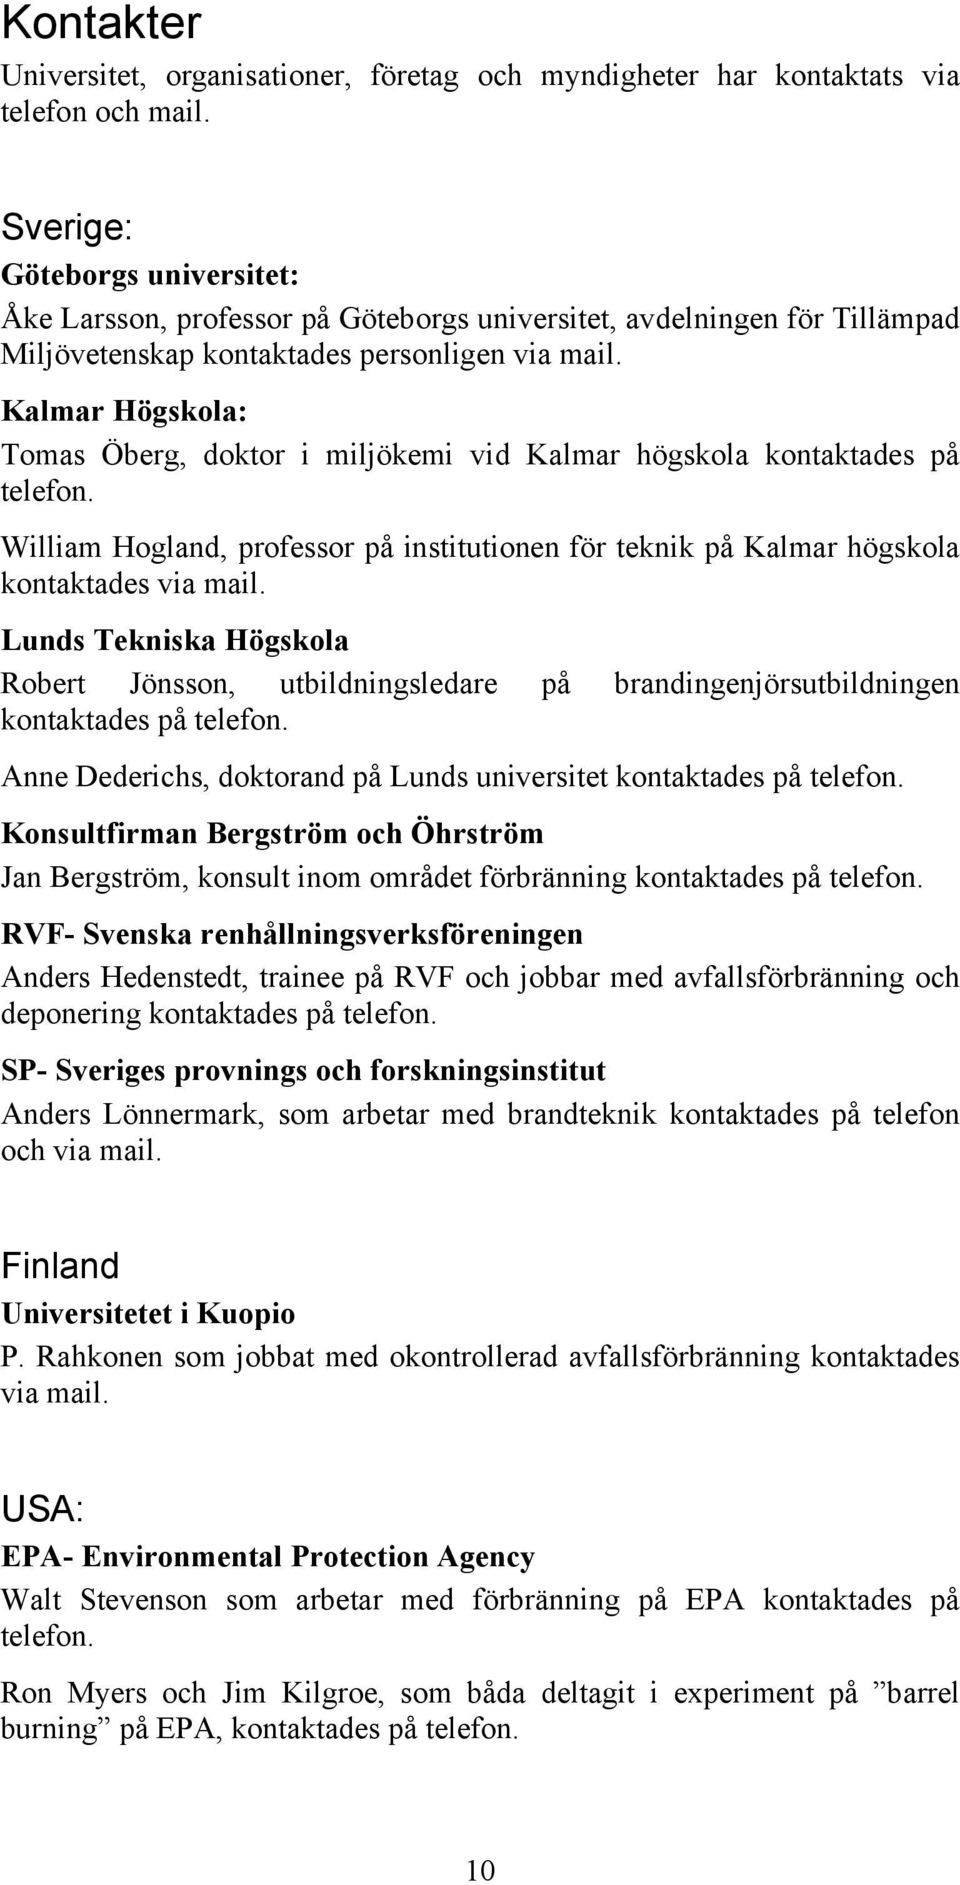 Kalmar Högskola: Tomas Öberg, doktor i miljökemi vid Kalmar högskola kontaktades på telefon. William Hogland, professor på institutionen för teknik på Kalmar högskola kontaktades via mail.